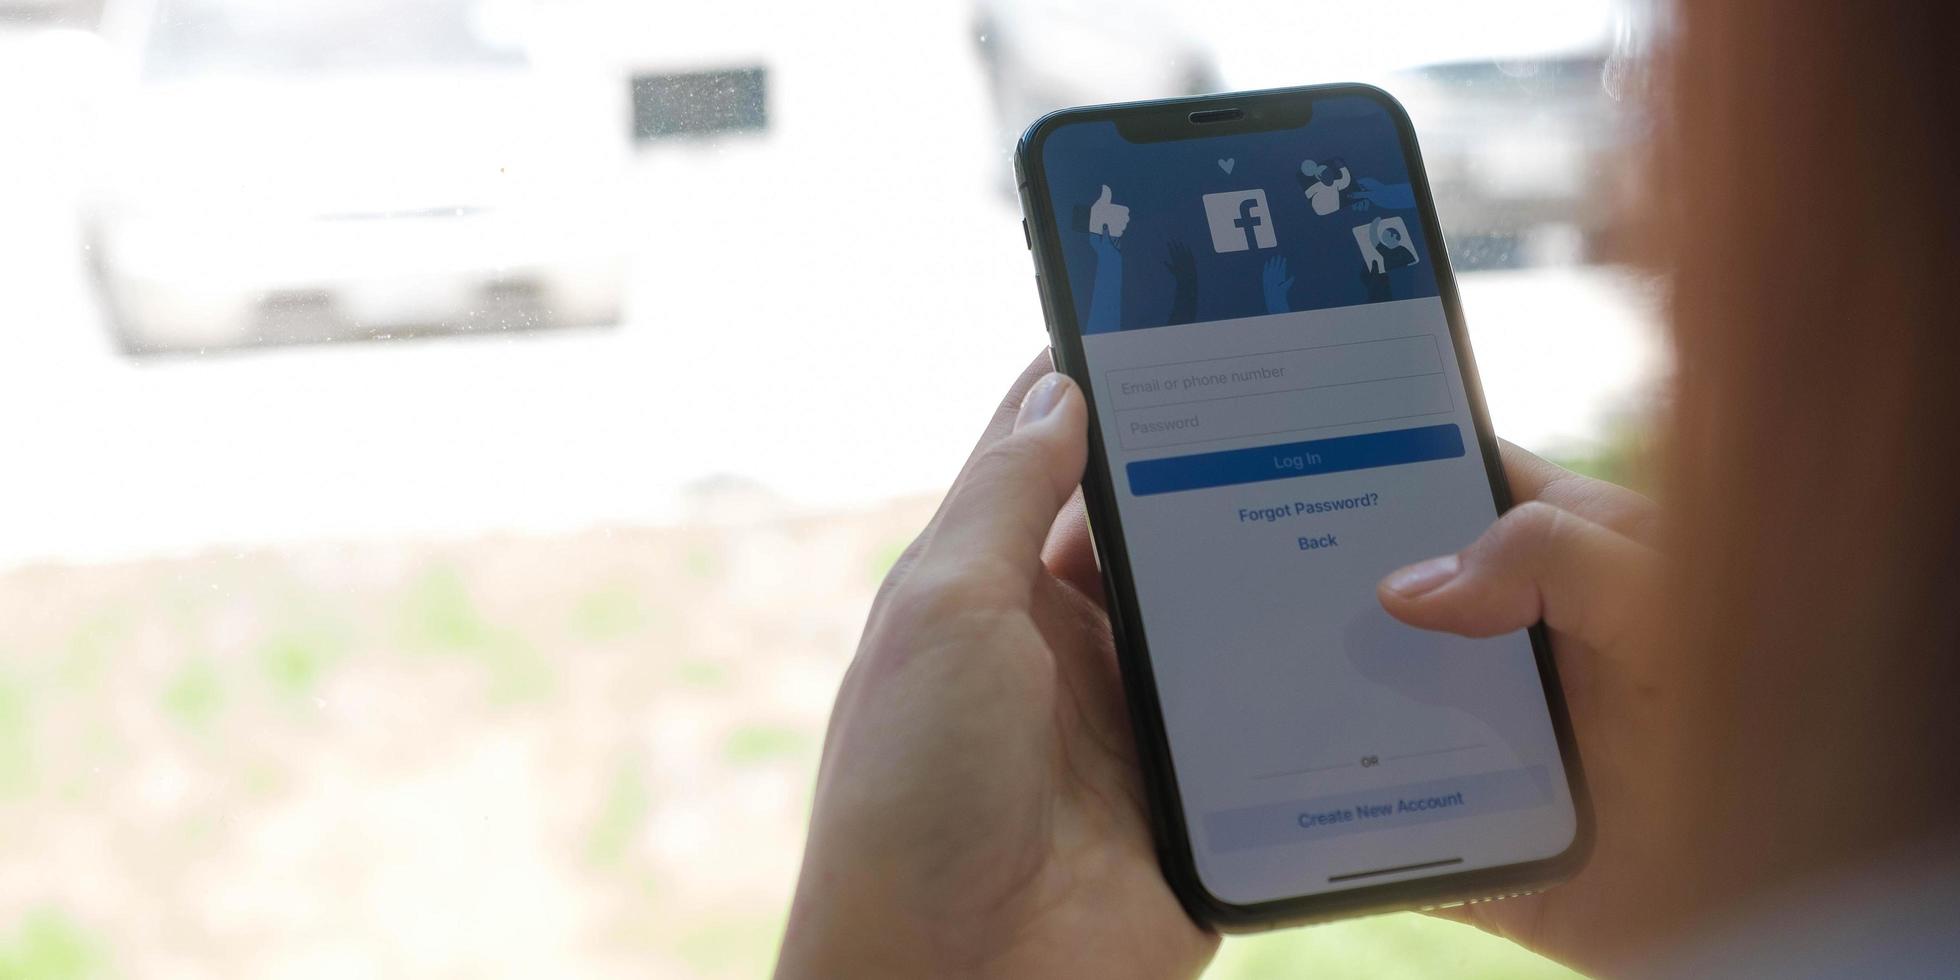 chiang mai, thailand 18. august 2020 - frau, die ein iphone x mit sozialem internetdienst facebook auf dem bildschirm hält. foto